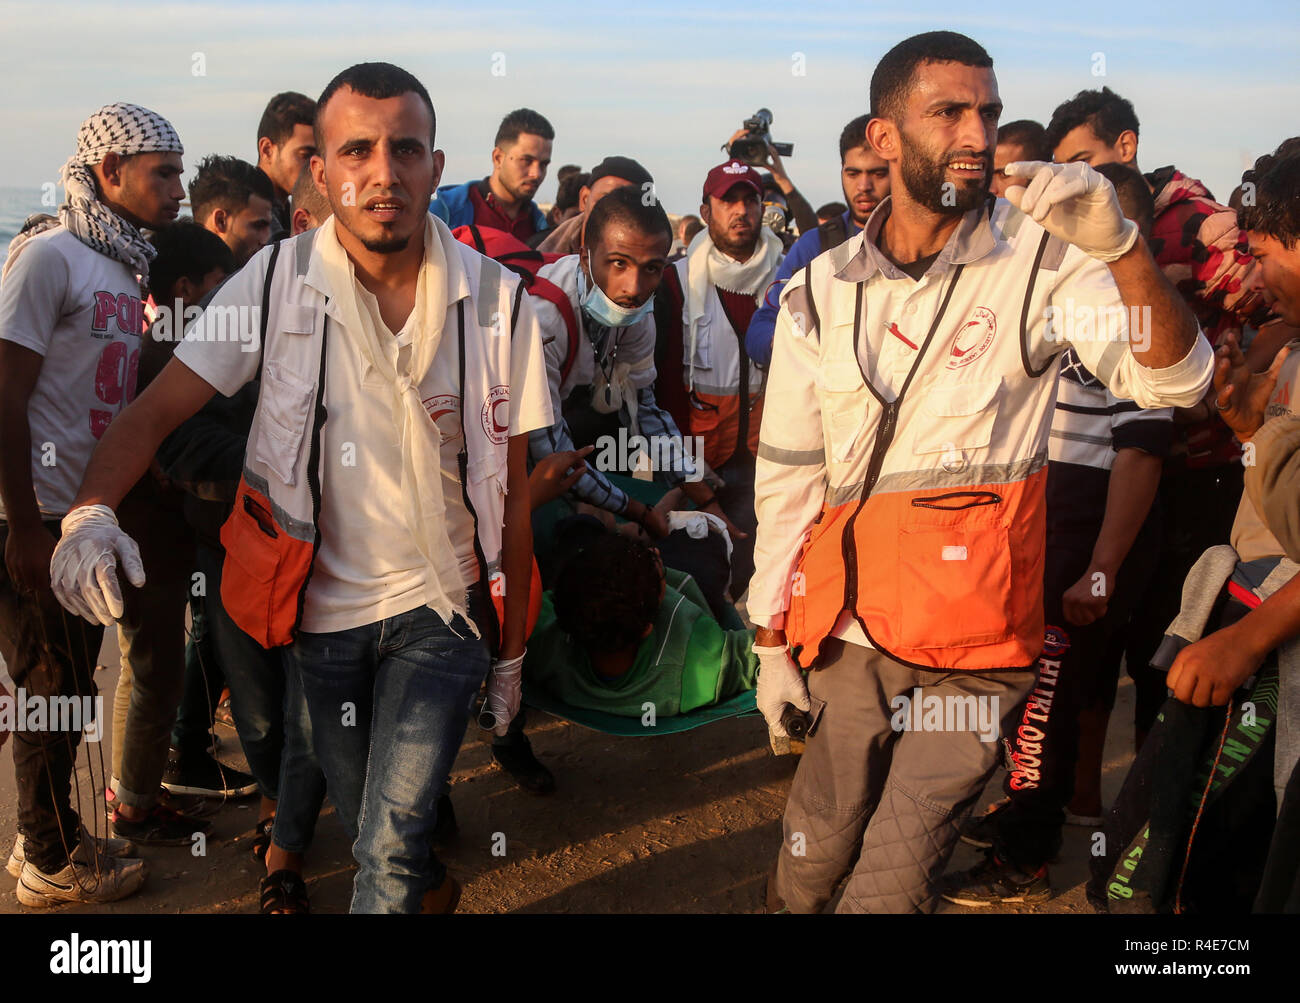 La striscia di Gaza. 26 Nov, 2018. I medici palestinesi portano un uomo ferito durante gli scontri con le truppe israeliane nei pressi del confine marittimo con Israele, nel nord della Striscia di Gaza, nov. 26, 2018. Almeno tre palestinesi sono stati feriti il lunedì e decine subito soffocamento dopo inalazione di gas lacrimogeni in scontri tra dimostranti palestinesi e soldati israeliani nel nord della Striscia di Gaza, i medici hanno detto. Credito: Xinhua/Alamy Live News Foto Stock